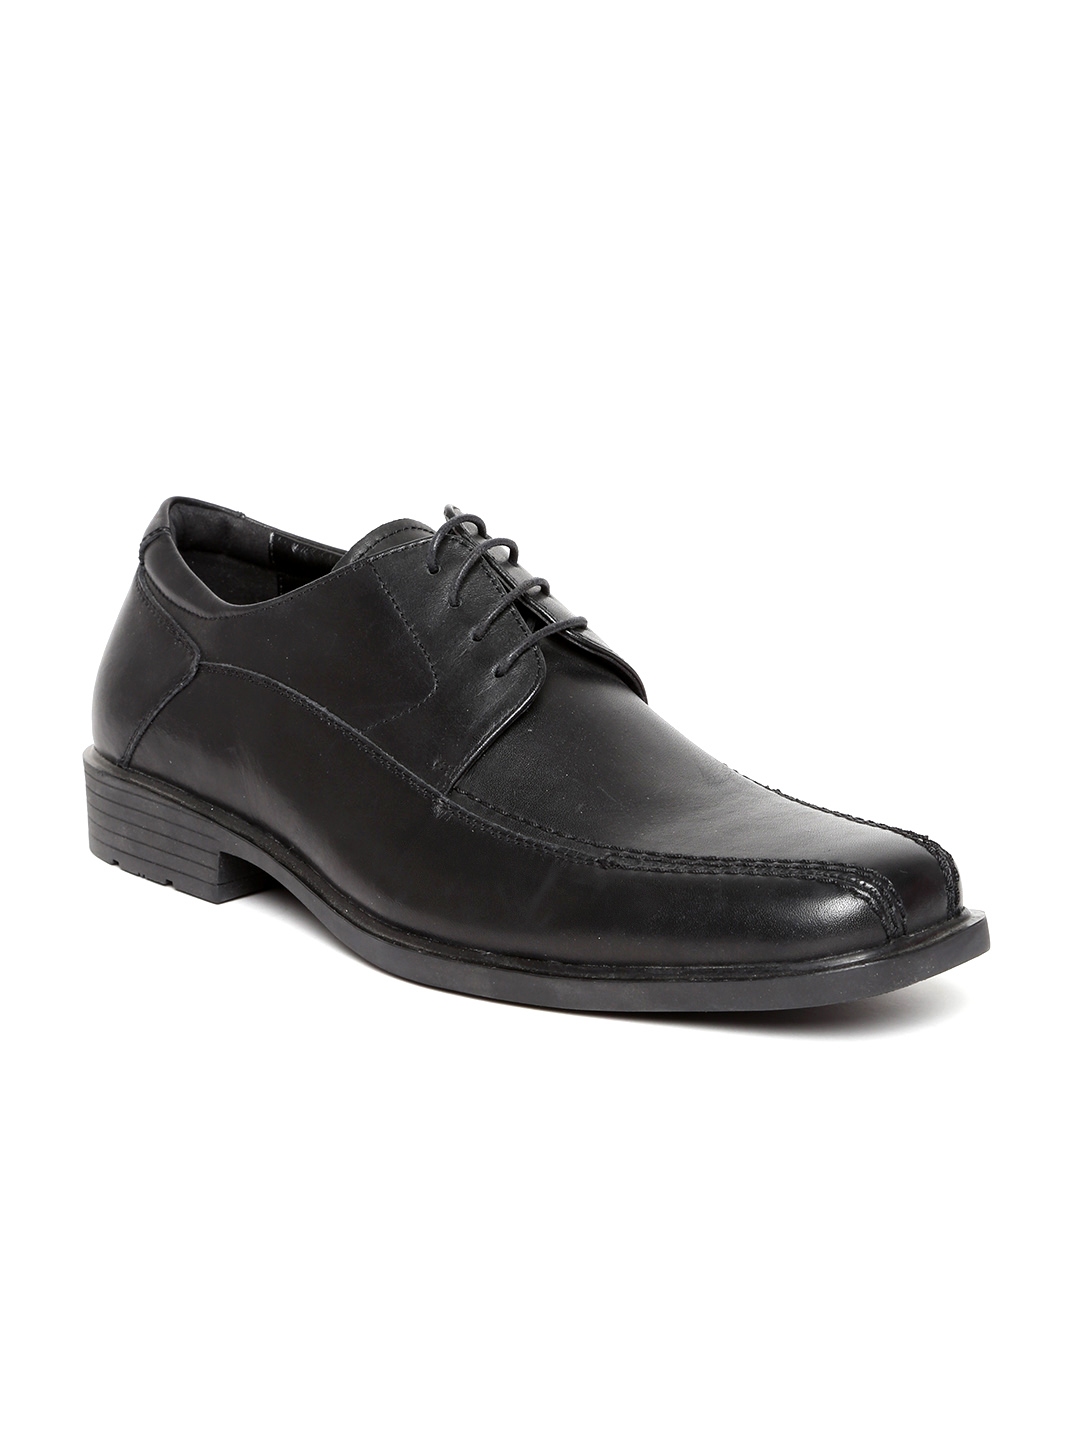 Buy Kenneth Cole Men Black Leather Formal Shoes - Formal Shoes for Men ...